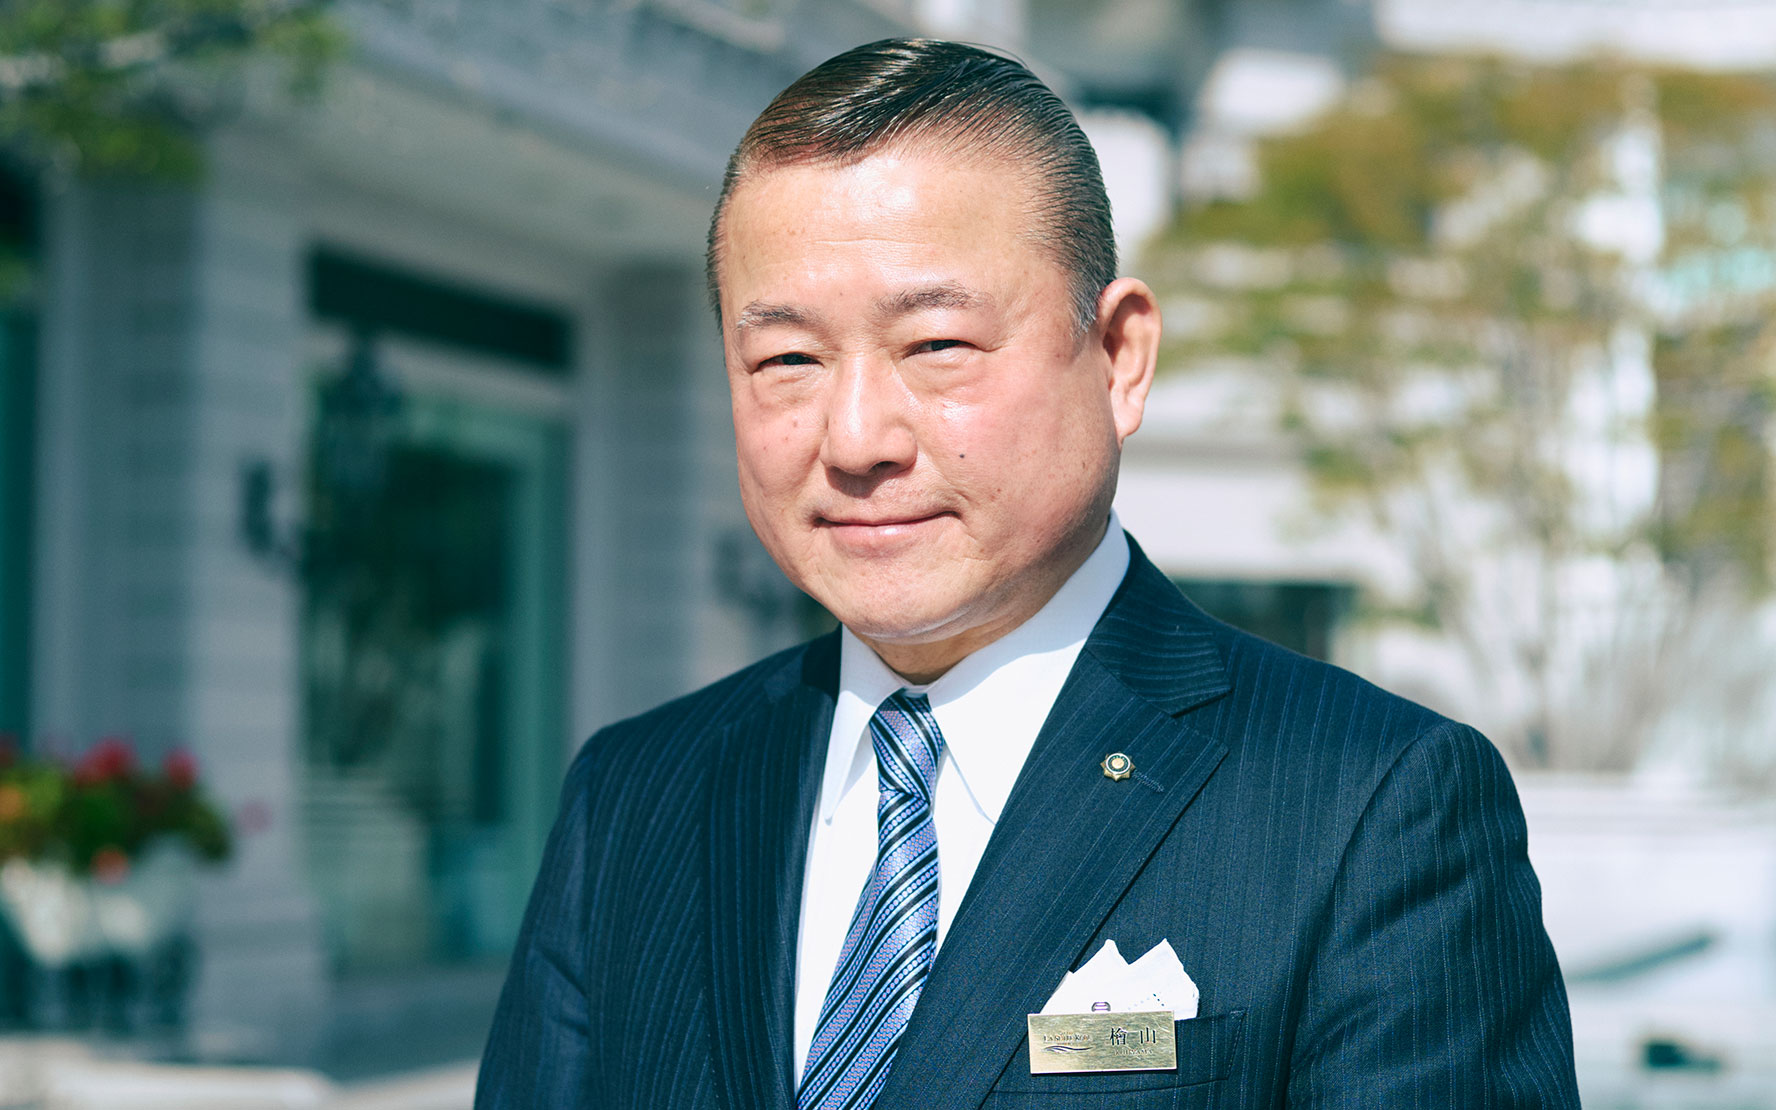 ホテル ラ・スイート神戸ハーバーランド 総支配人 檜山 和司さん「おもてなしの真髄」とは？┃街のプロわざを「みつける」